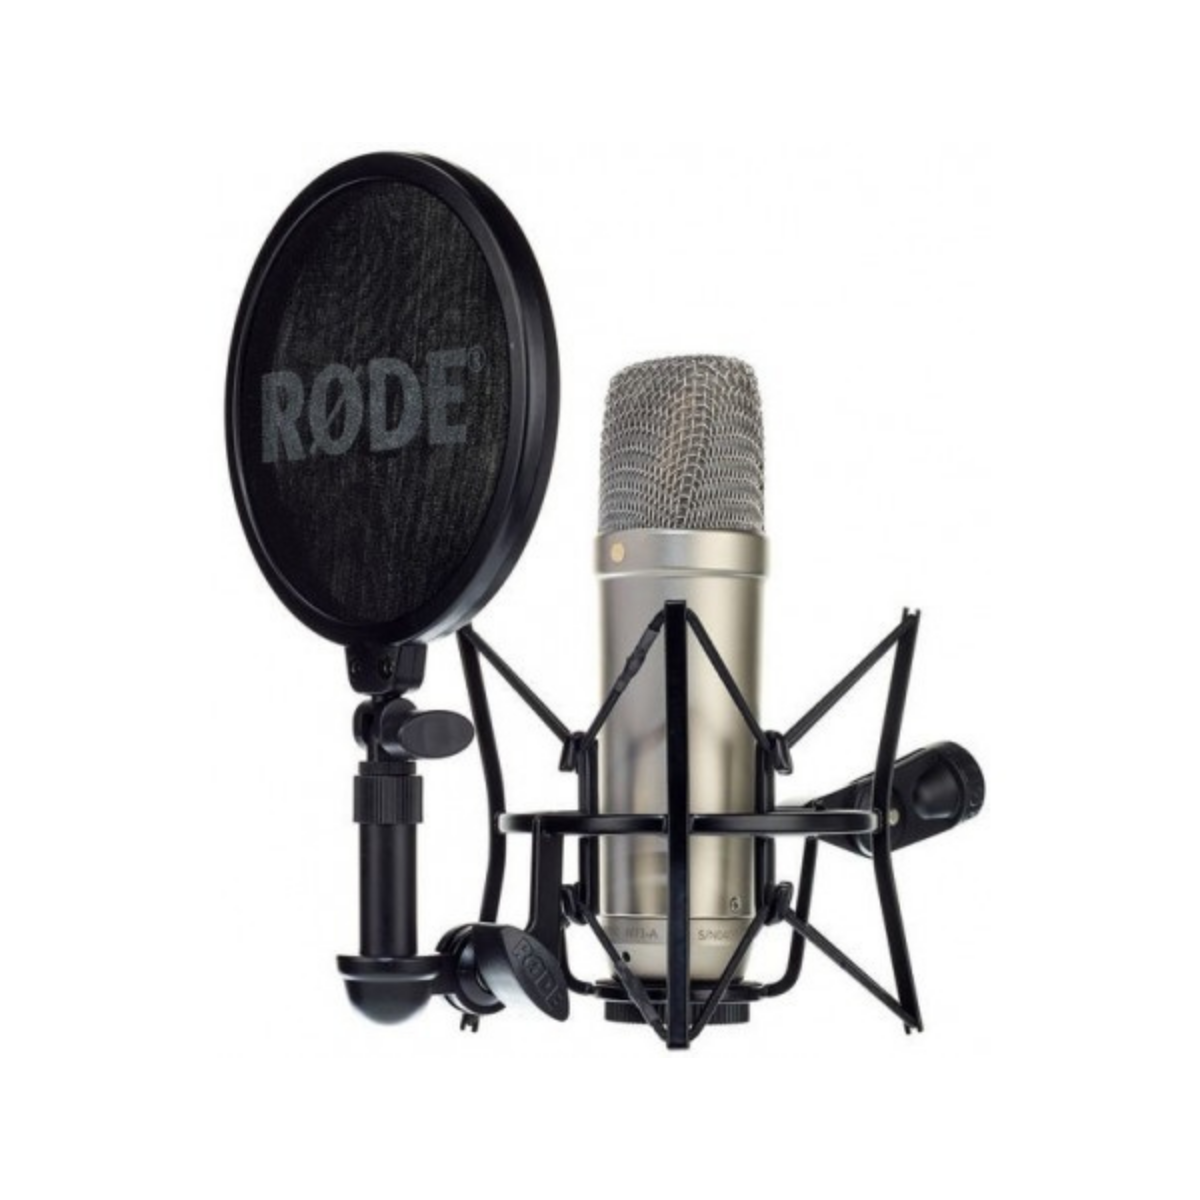 RODE NT1-A - Micrófono condensador para voz e instrumentos - Expo Music Perú